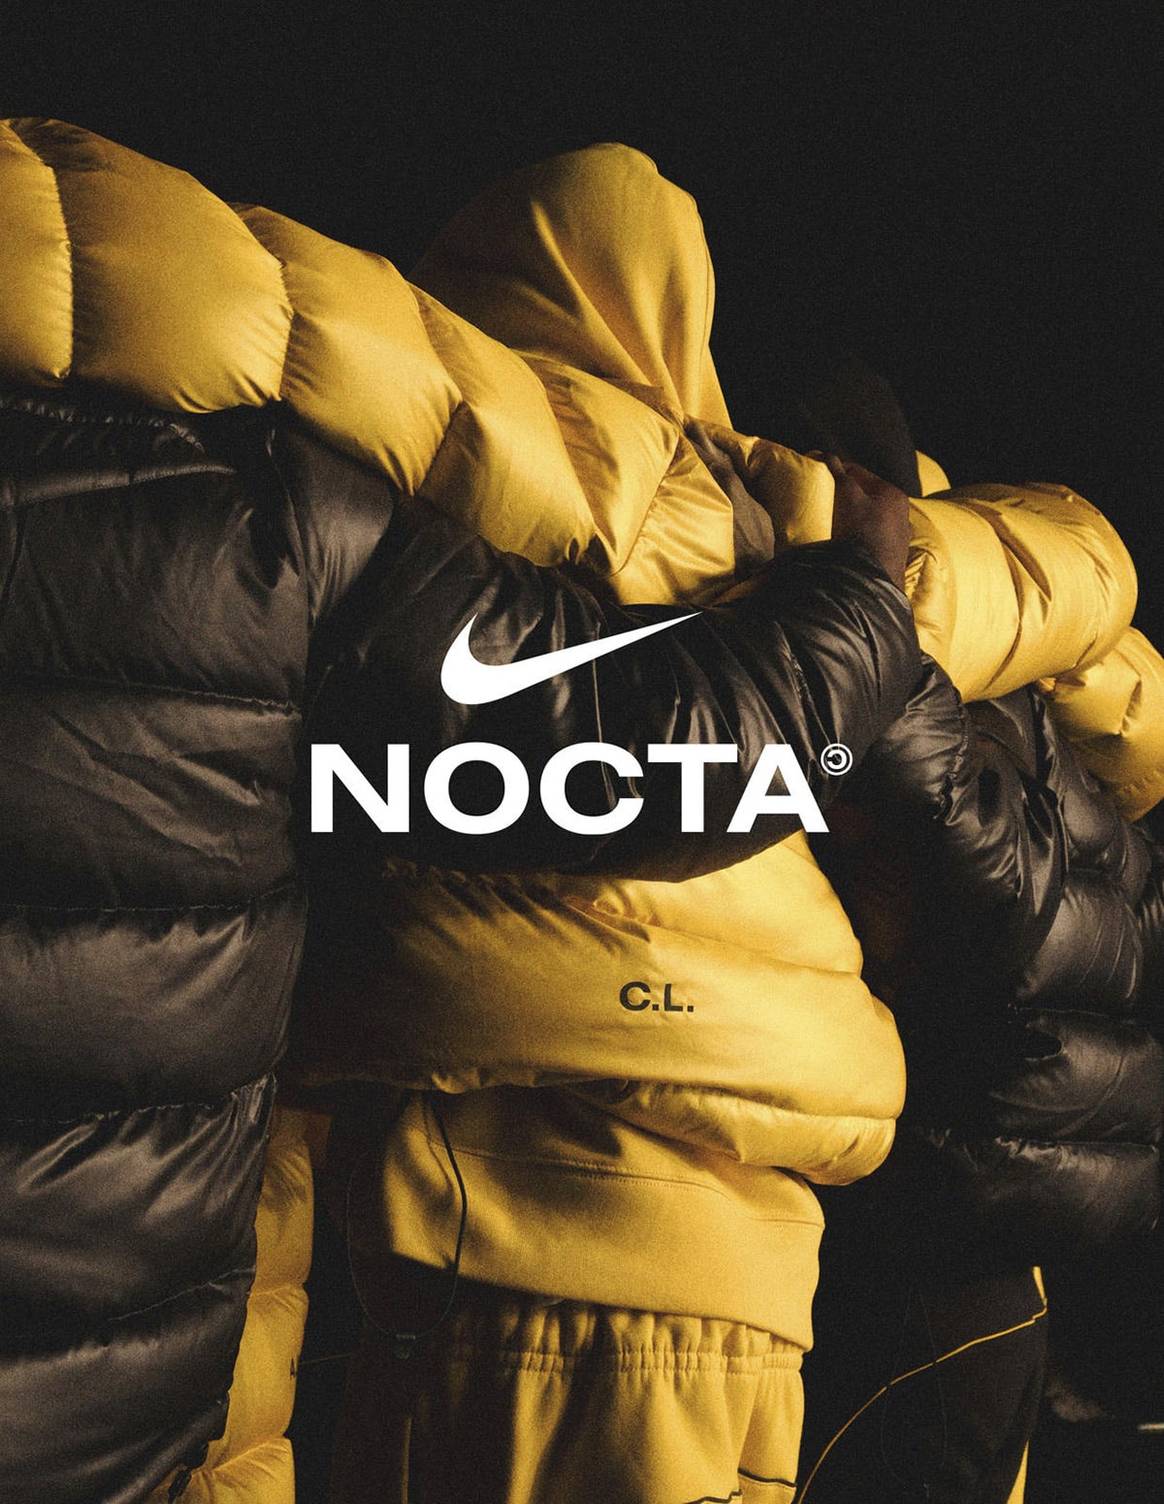 Nike amplía fronteras y lanza “Nocta”, su nueva firma junto al rapero Drake